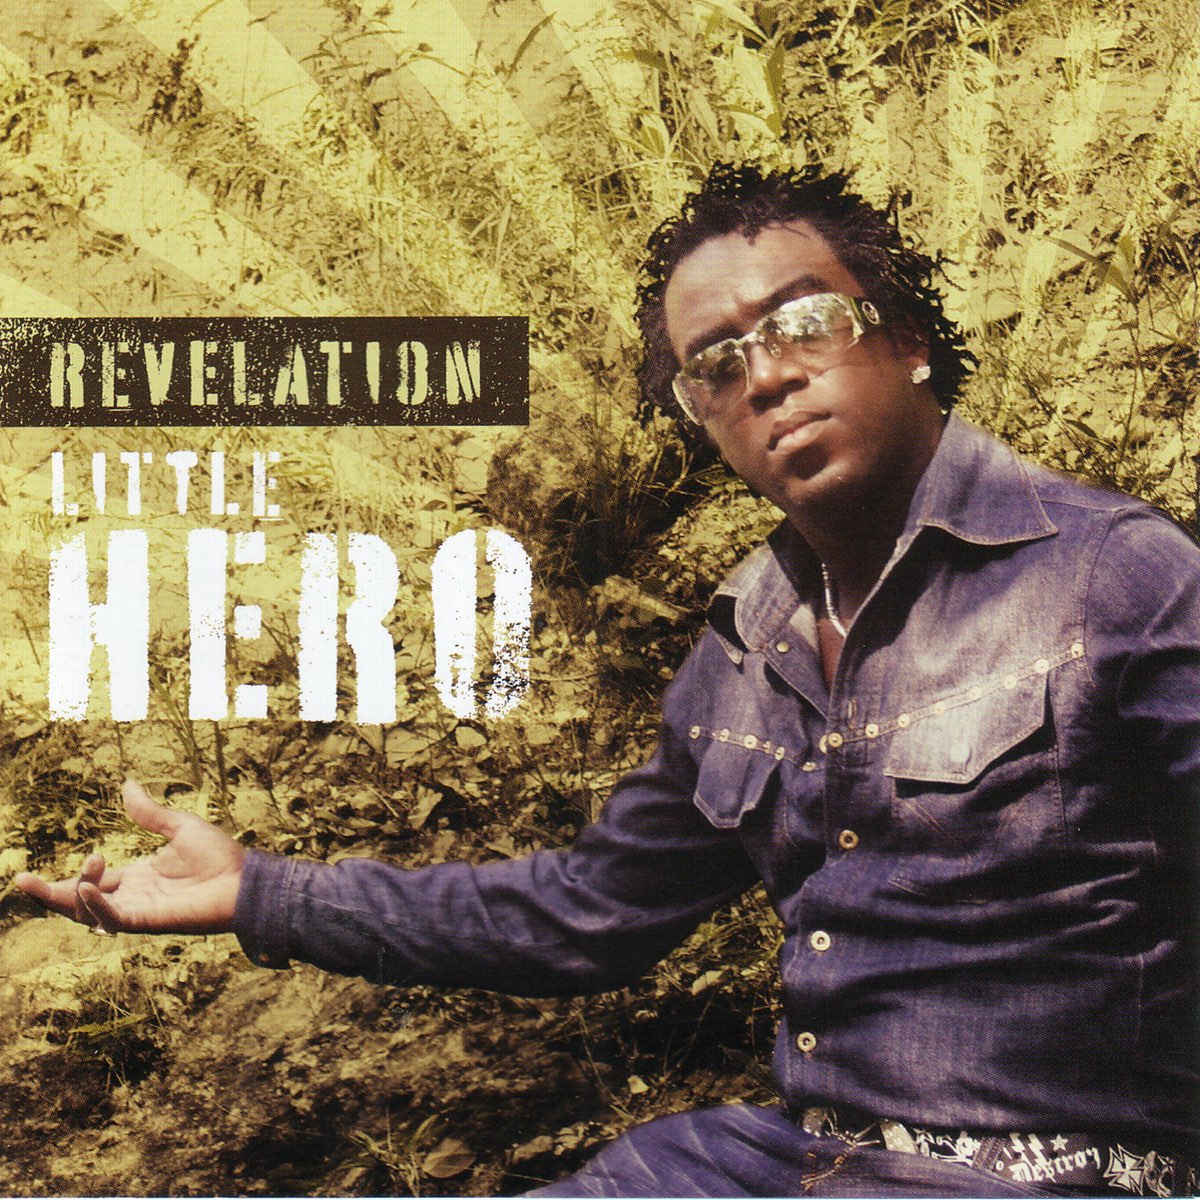 Revelation - Album by Little Hero - Apple Music